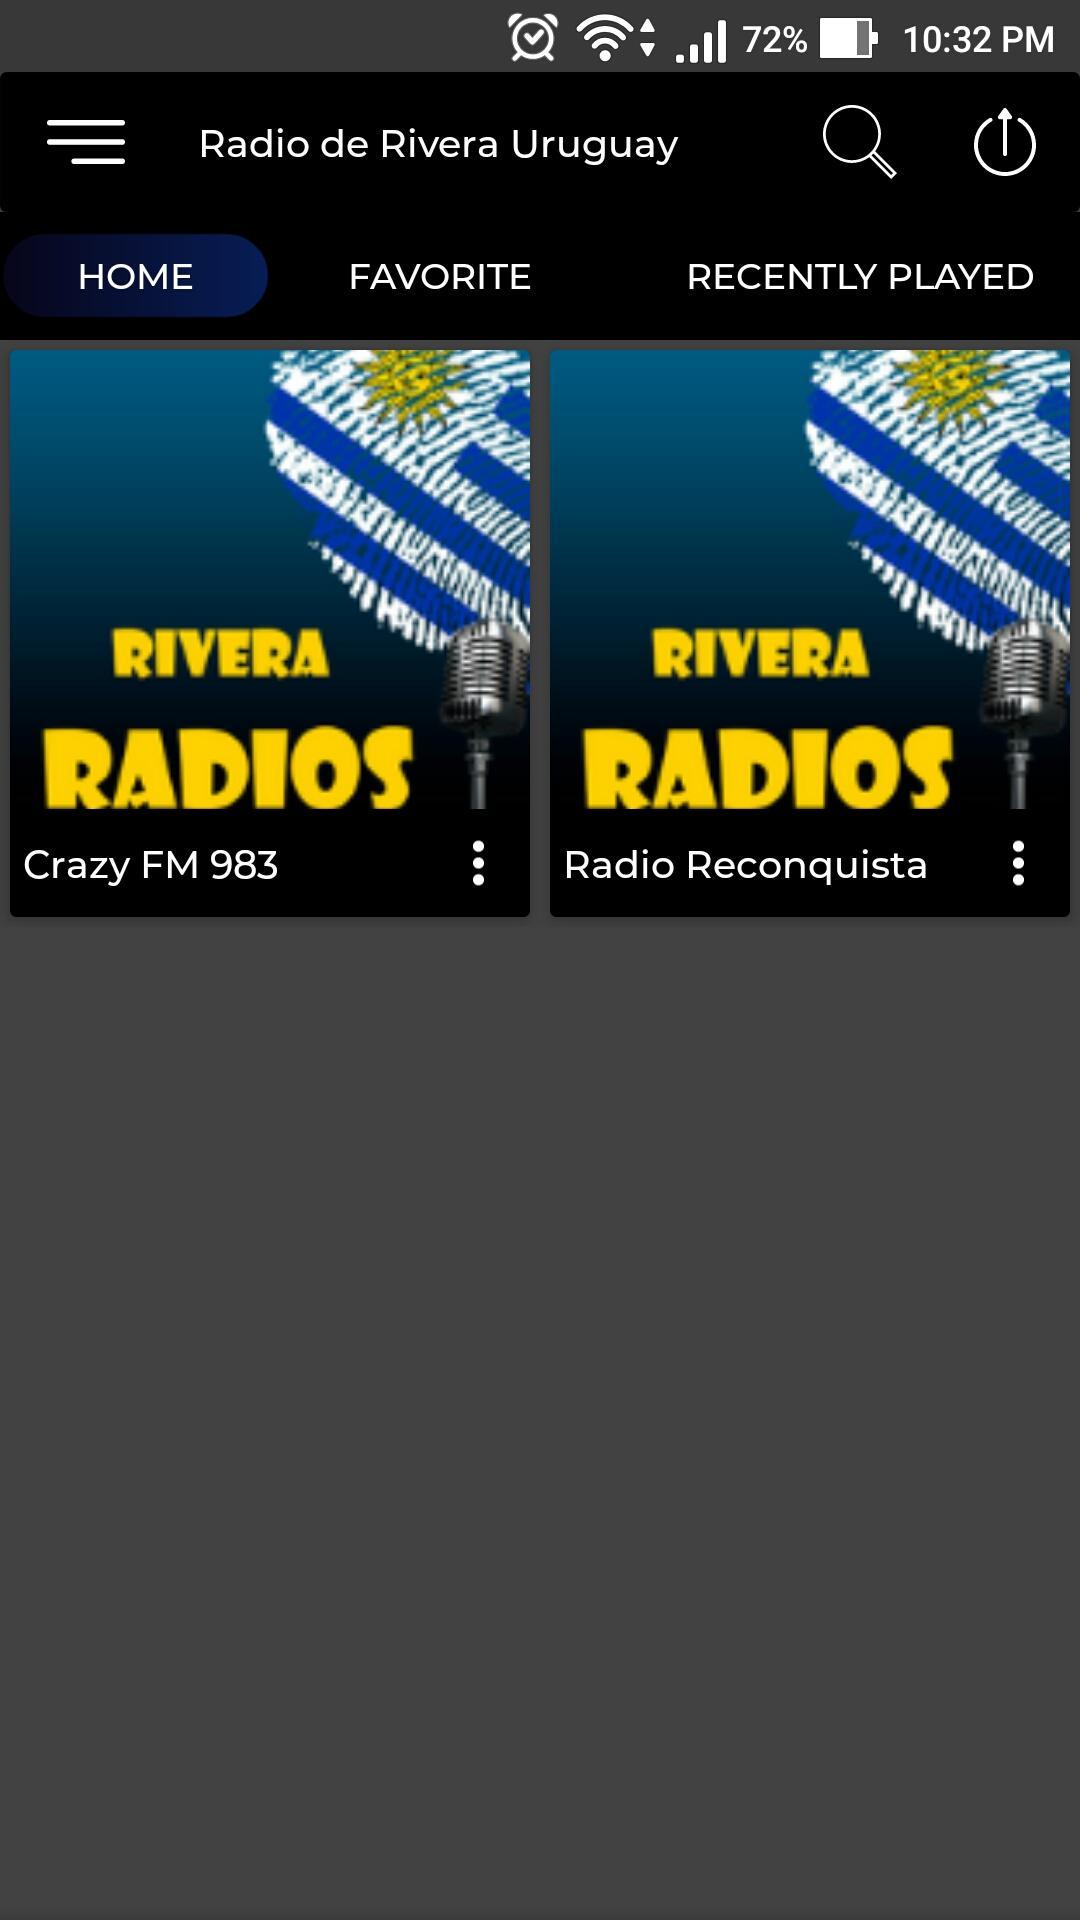 Radio de Rivera Uruguay for Android - APK Download